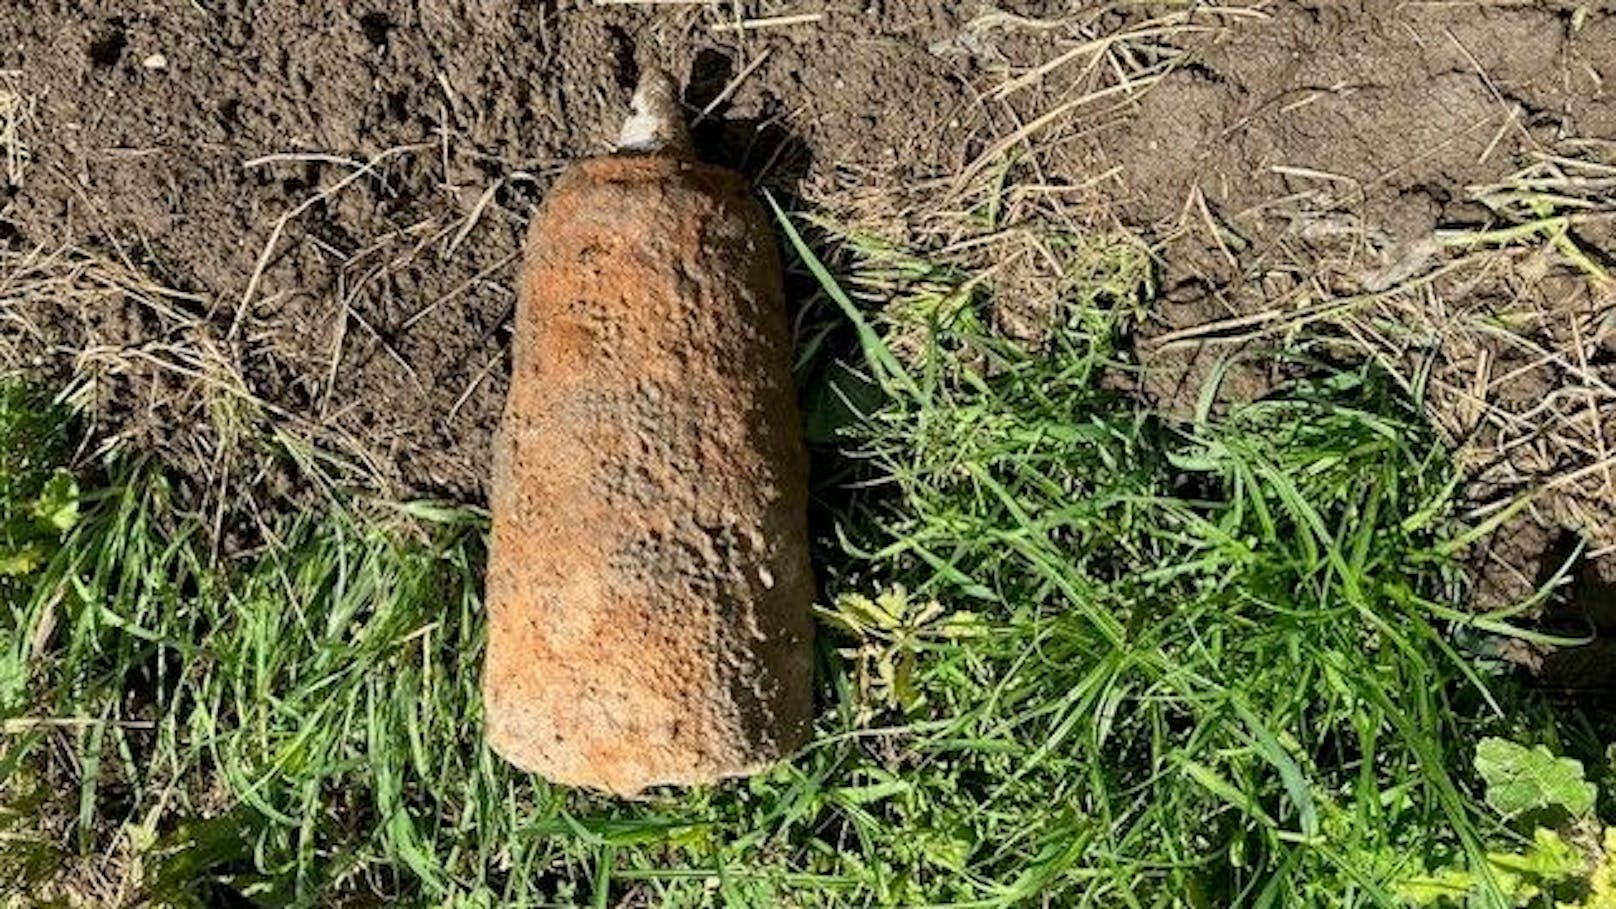 Diese Fliegerbombe wurde auf einem Acker im Bezirk Leoben gefunden.